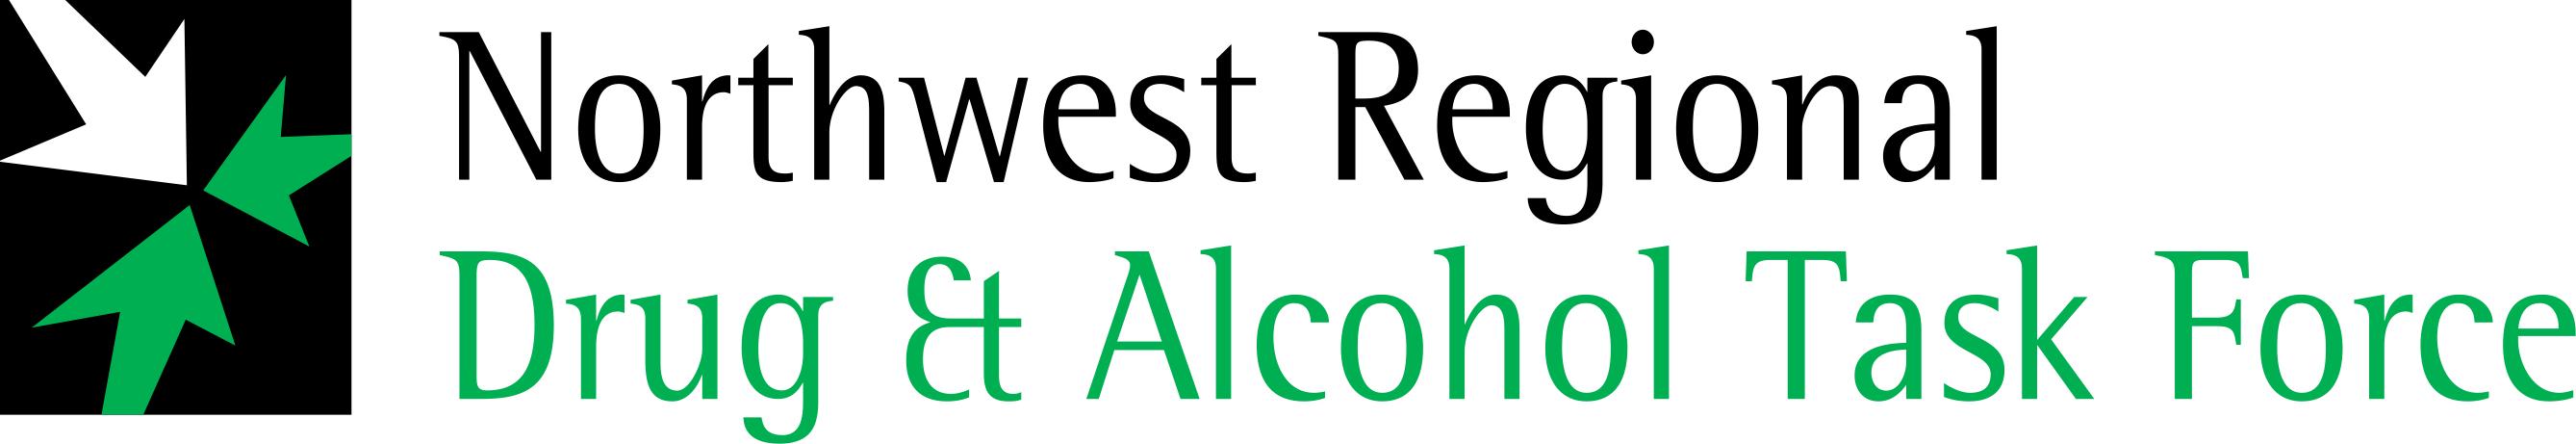 North West Regional Drug & Alcohol Task Force